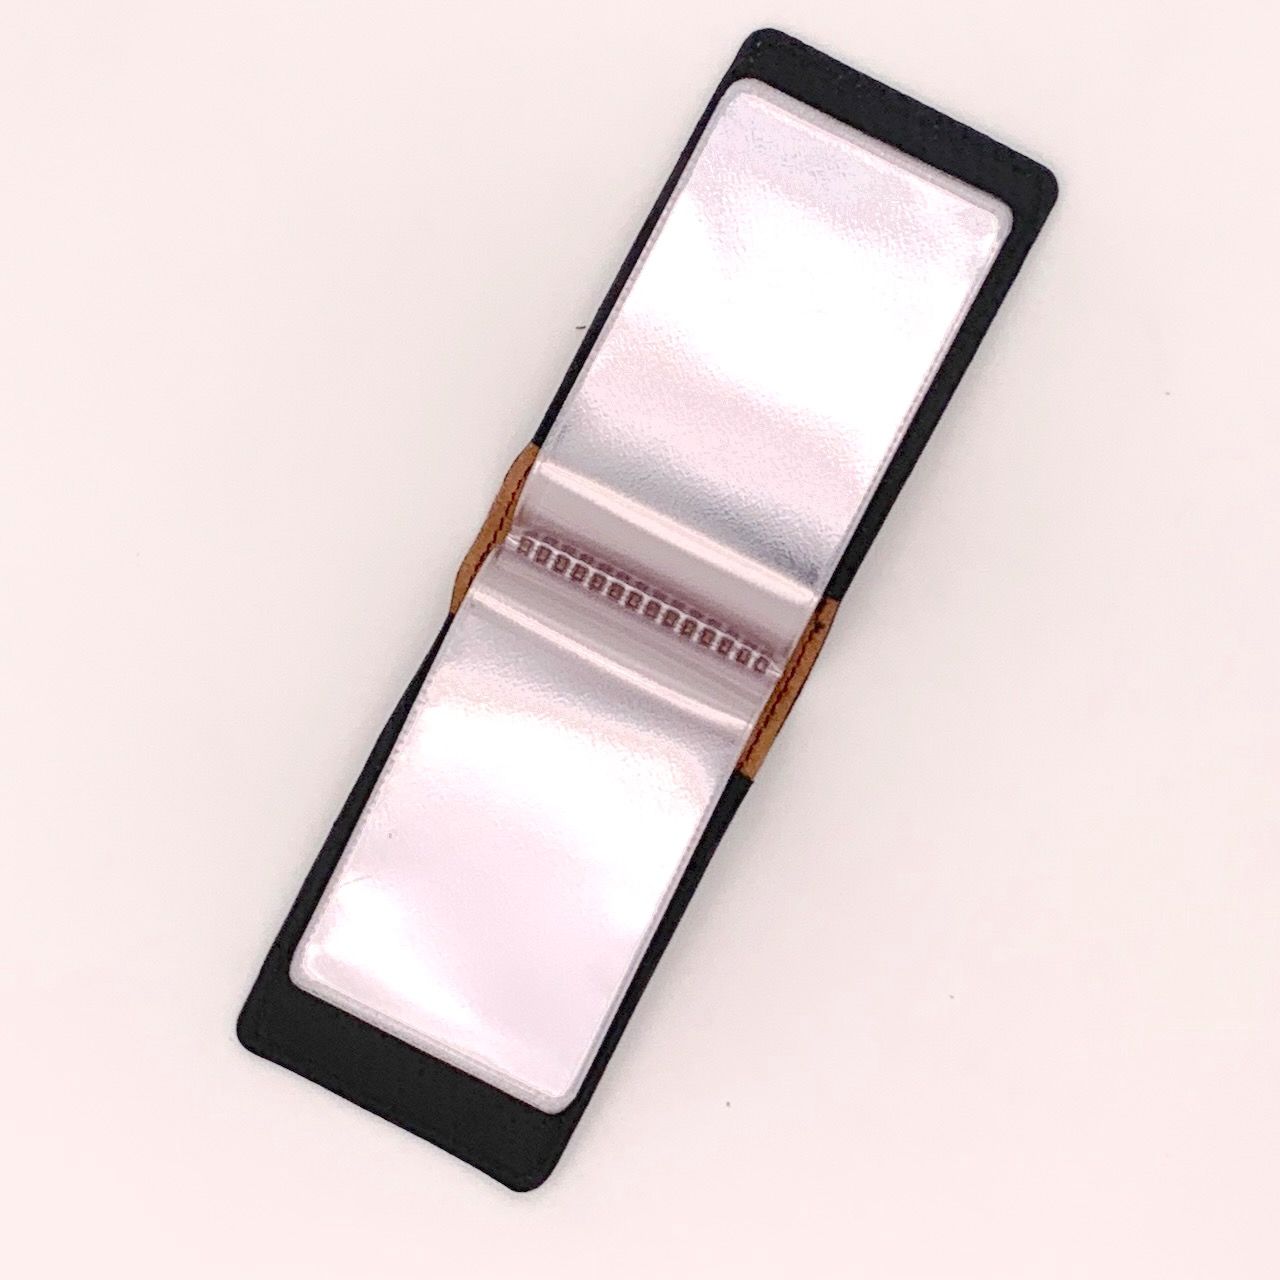 Визитница, подходит для банковских и скидочных карт  (натуральная кожа),  термо штамп РЫБКА, можно использовать для банковских карт и проездных,  размер 11,7*6,7 см, цвет  розовый металлик